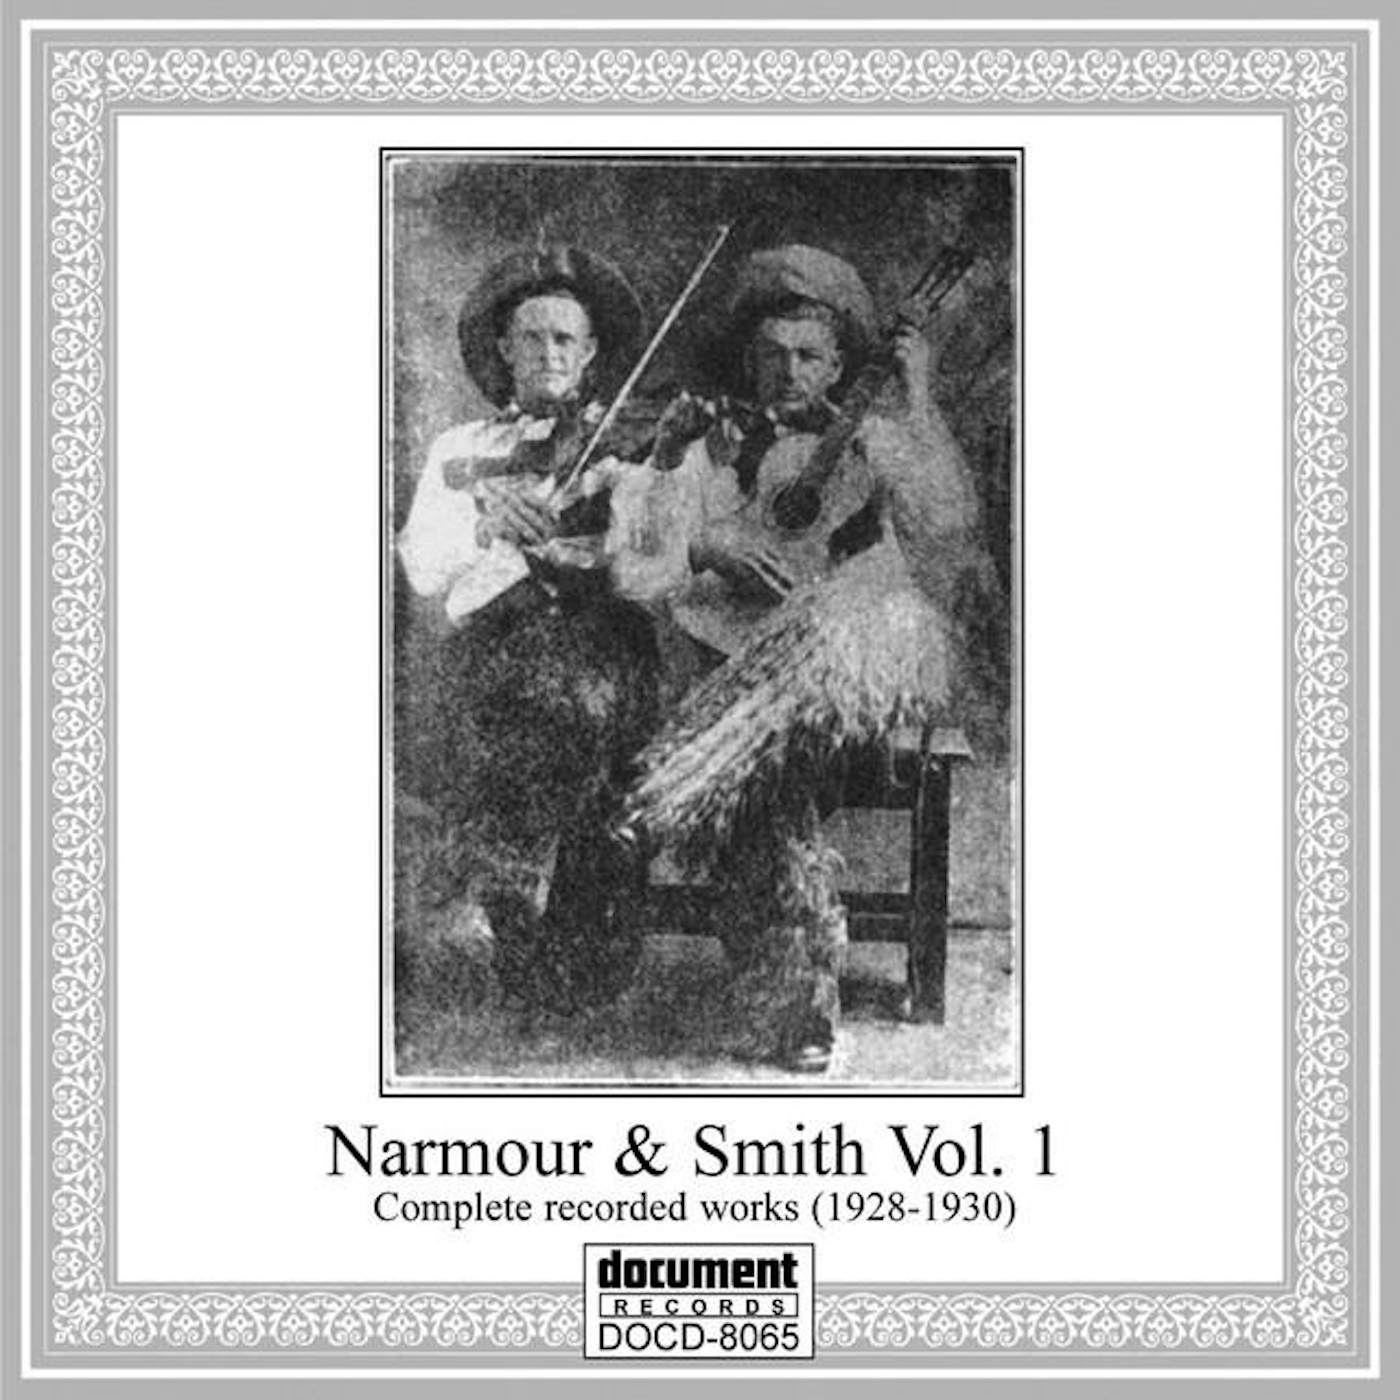 Narmour & Smith